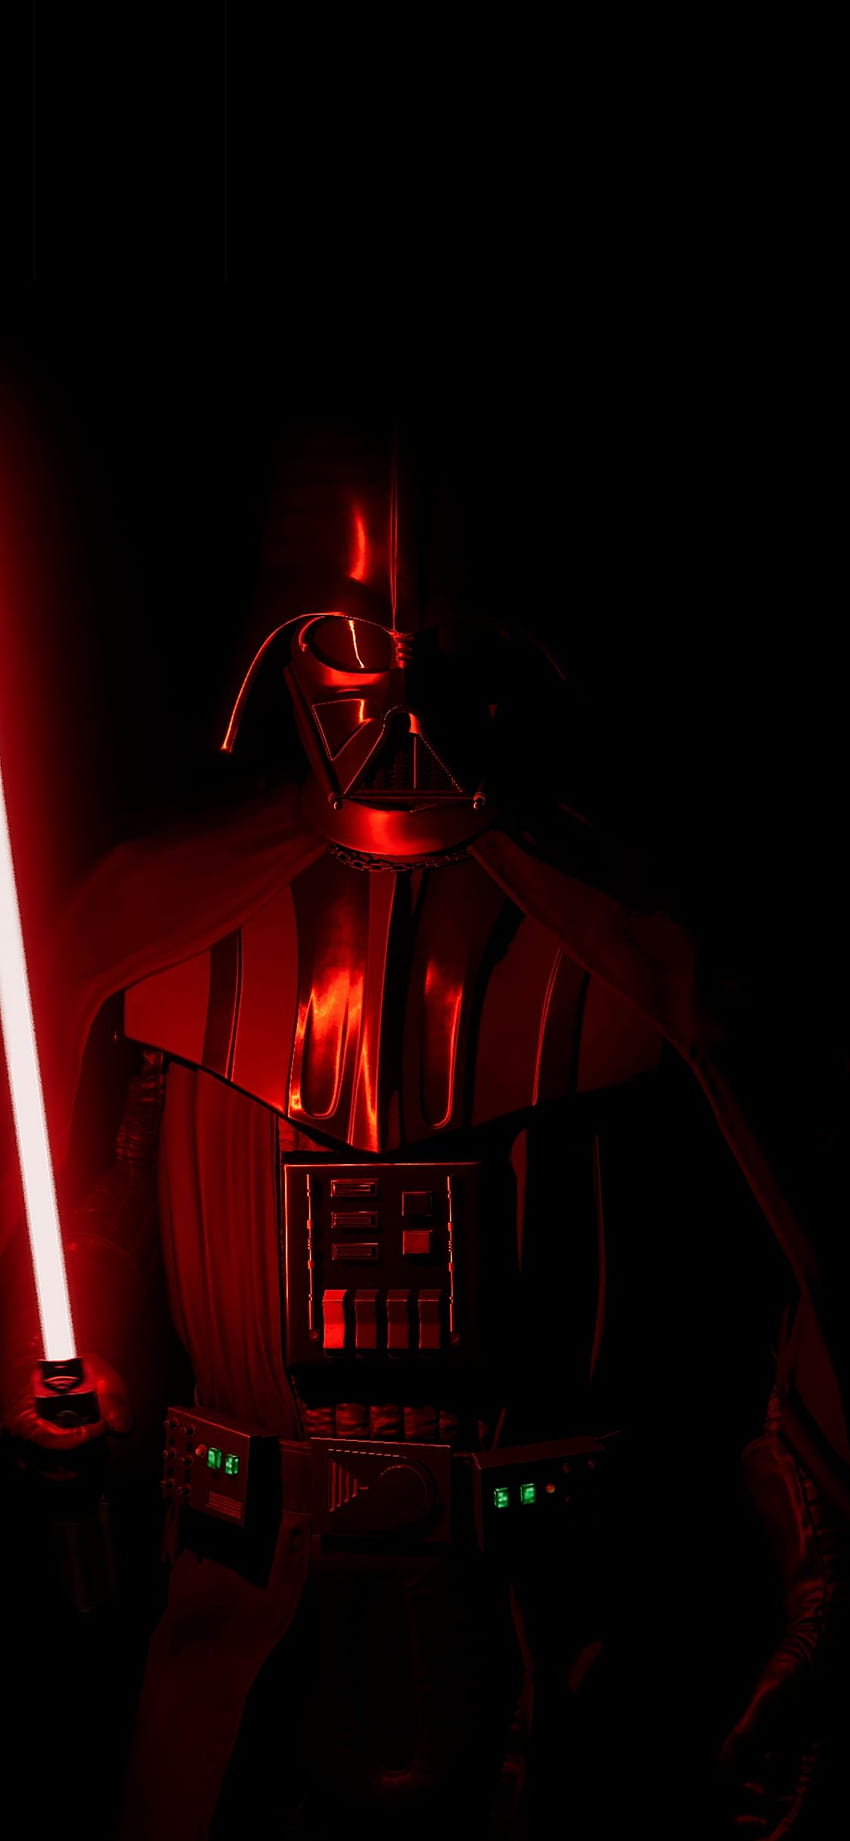 Darth Vader Star Wars Iphone X, darth vader iphone HD phone wallpaper